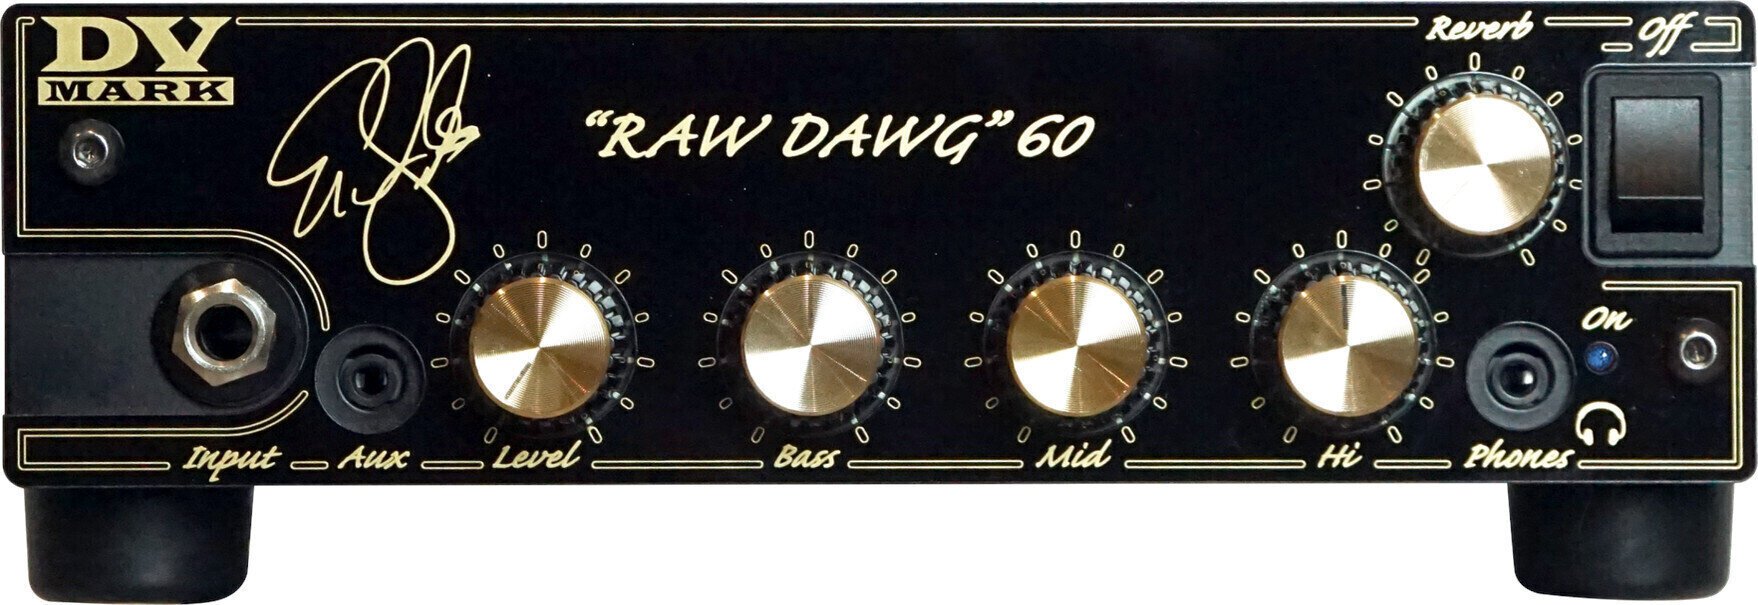 Halfbuizen gitaarversterker DV Mark DV RAW DAWG 60